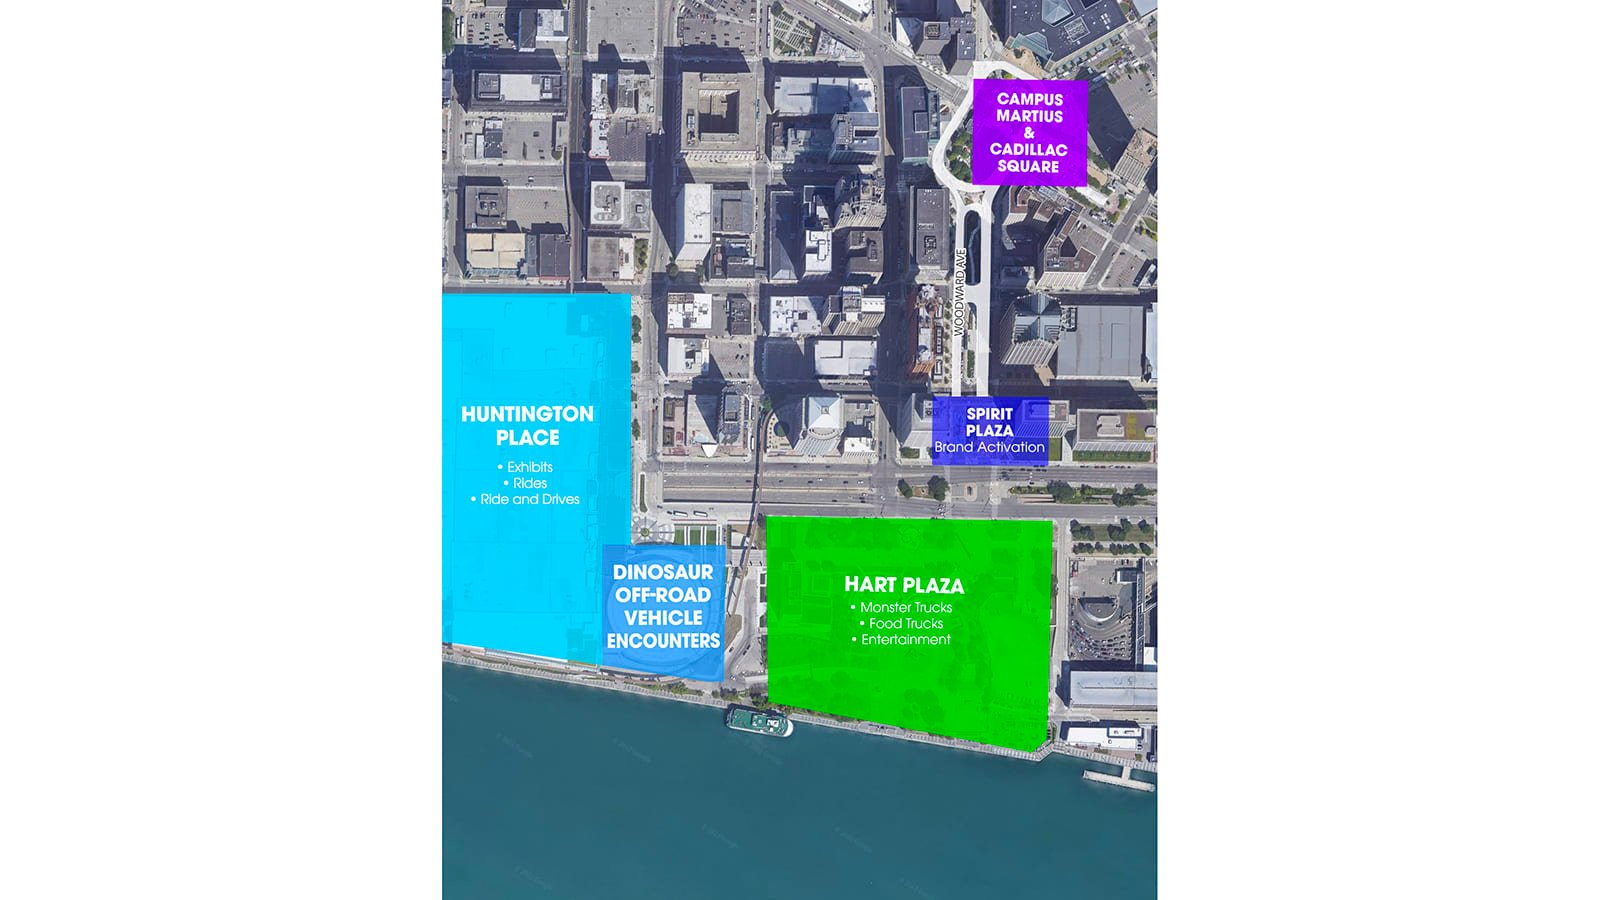 Carte du Salon de l'auto de Detroit 2022 mettant en évidence Huntington Place, Hart Plaza, Spirit Plaza, Cadillac Square et Camp Martius